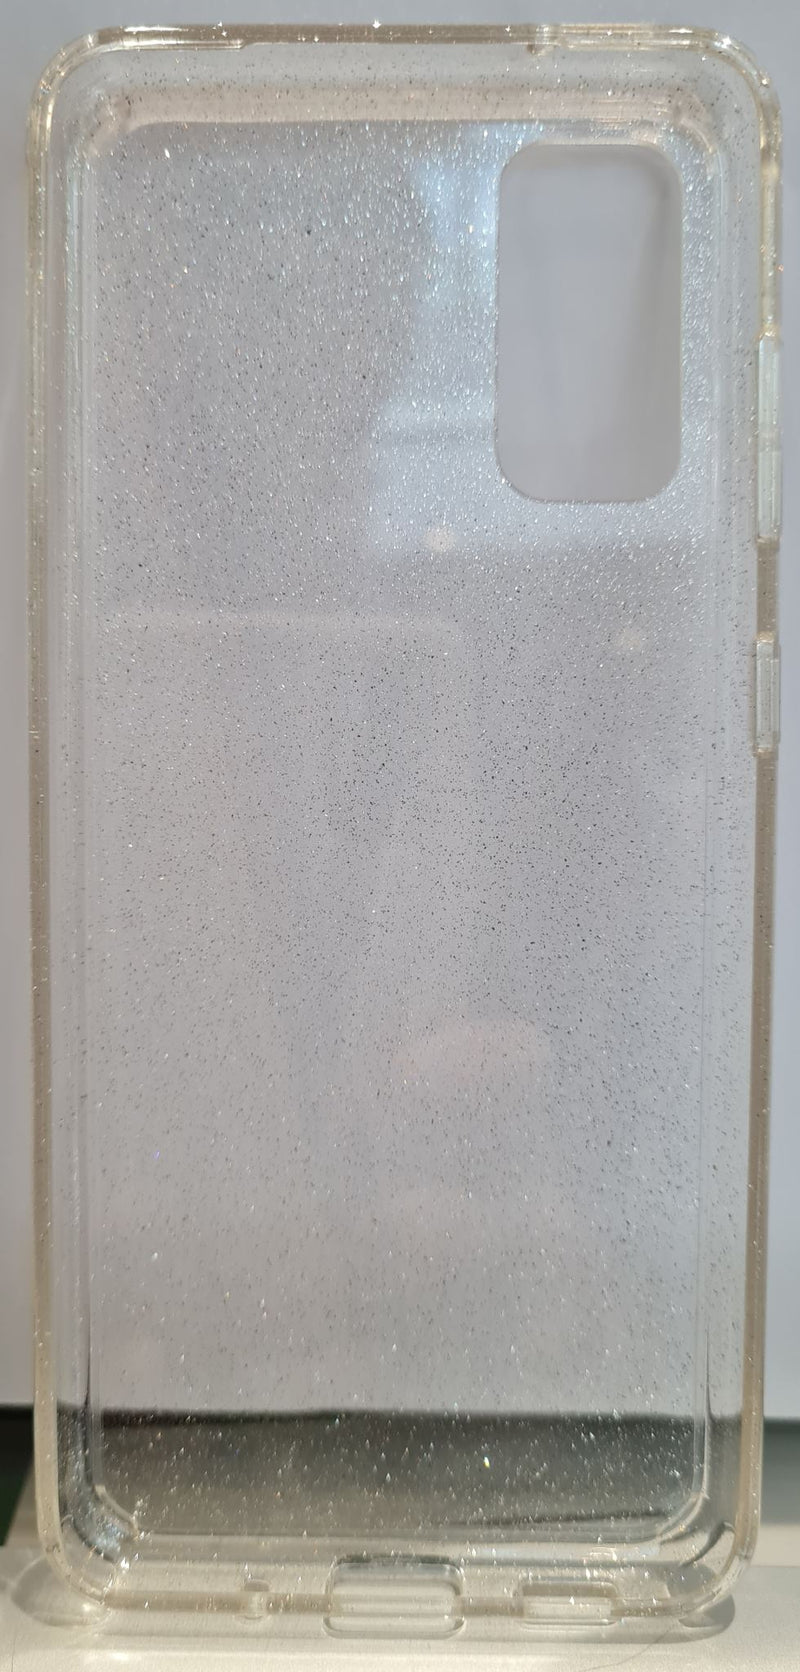 Uniq Samsung Galaxy S20 Lifepro Tinsel Case + Free Screen Protector